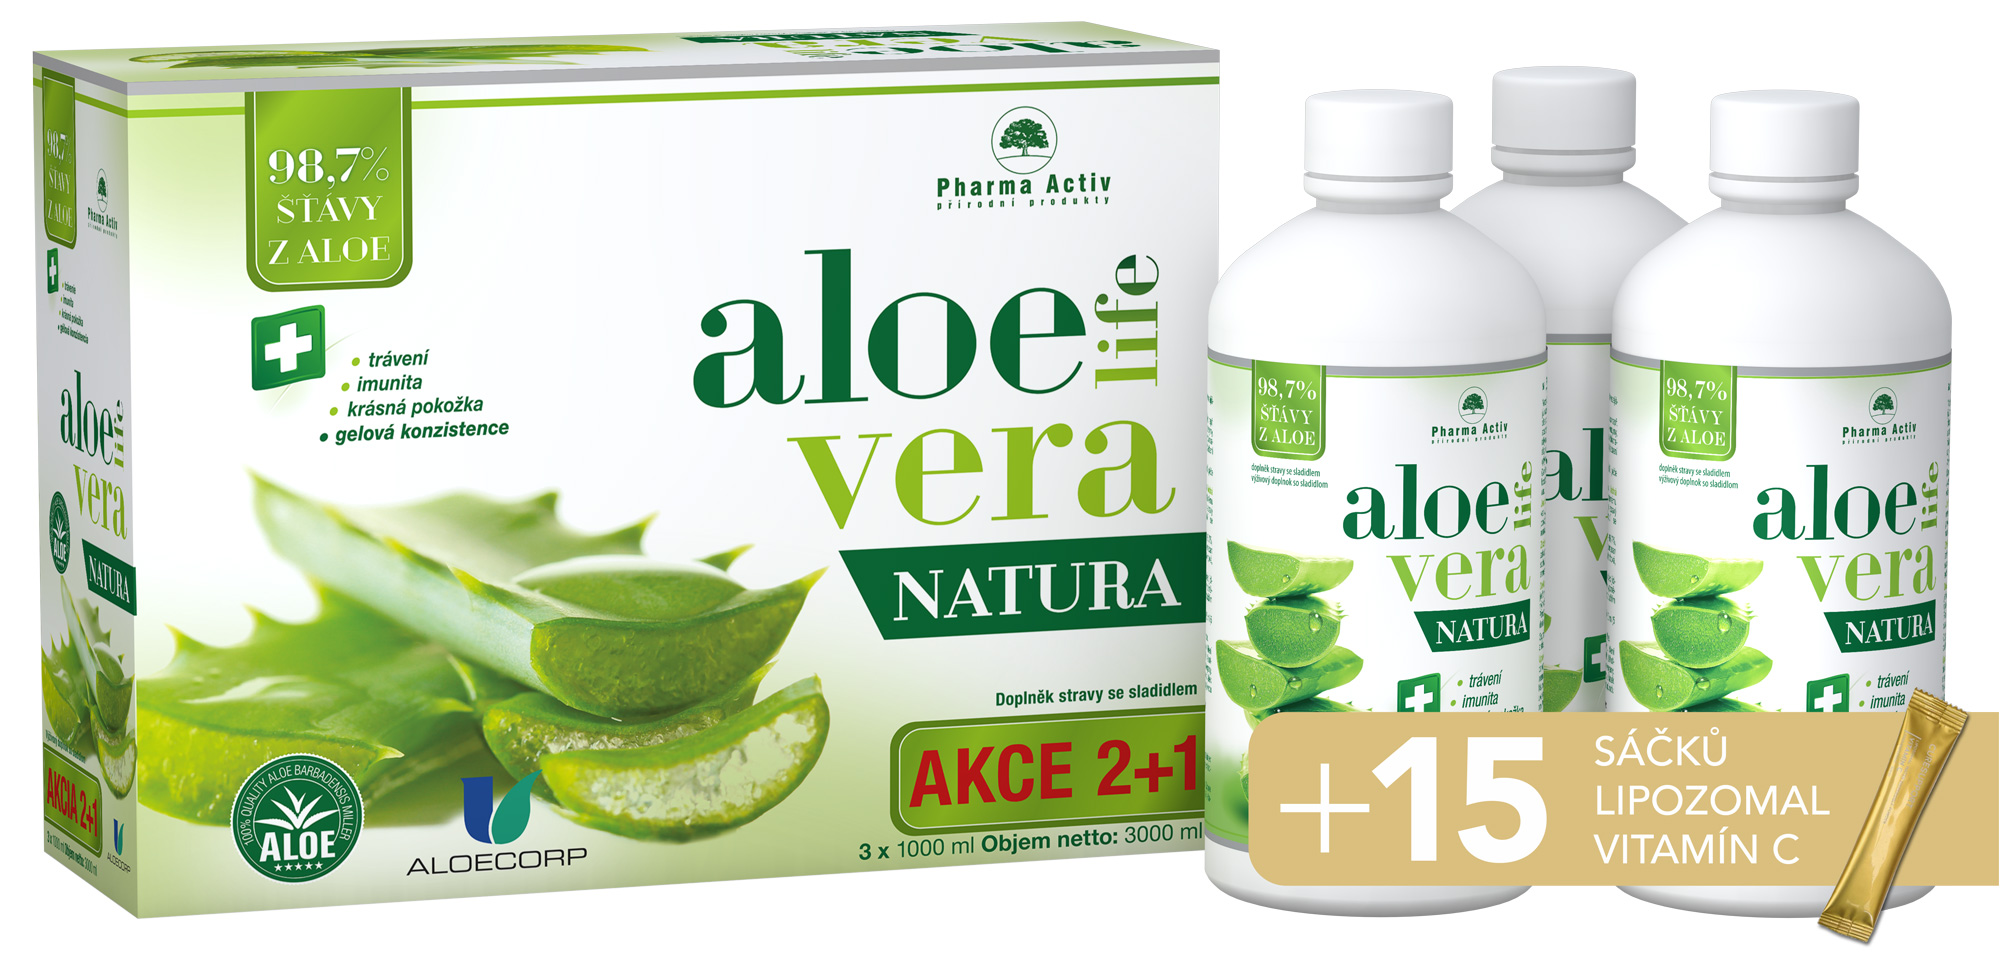 Zobrazit detail výrobku Pharma Activ AloeVeraLife Natura 2+1 1000 ml + Vitamín Lipo C 15 sáčků